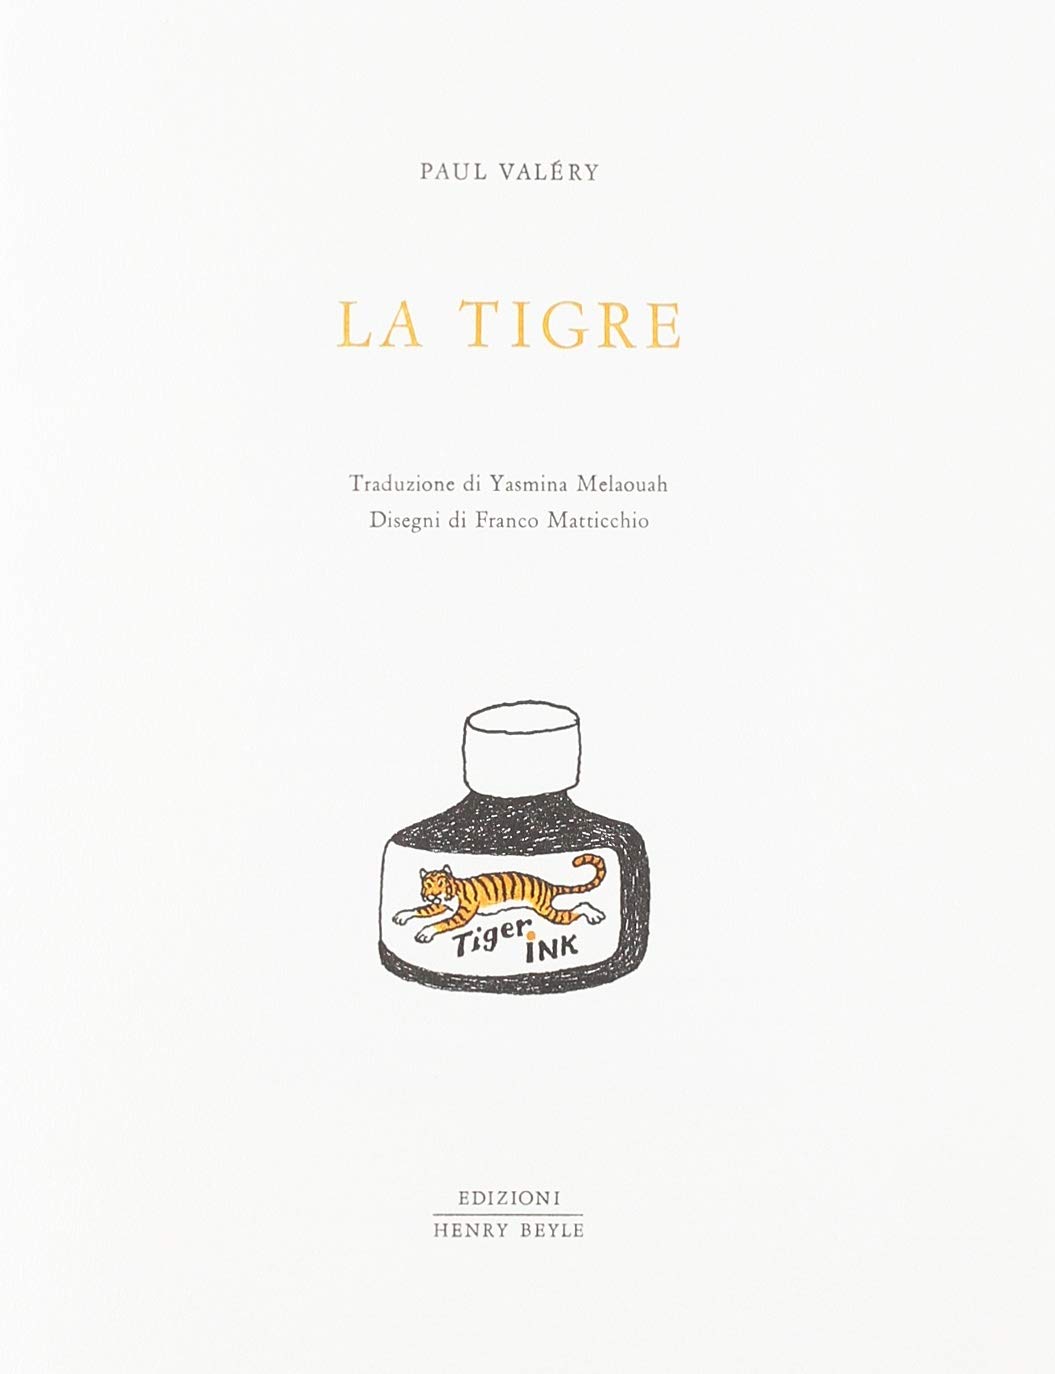 Libri Paul Valéry - La Tigre NUOVO SIGILLATO, EDIZIONE DEL 01/01/2018 SUBITO DISPONIBILE